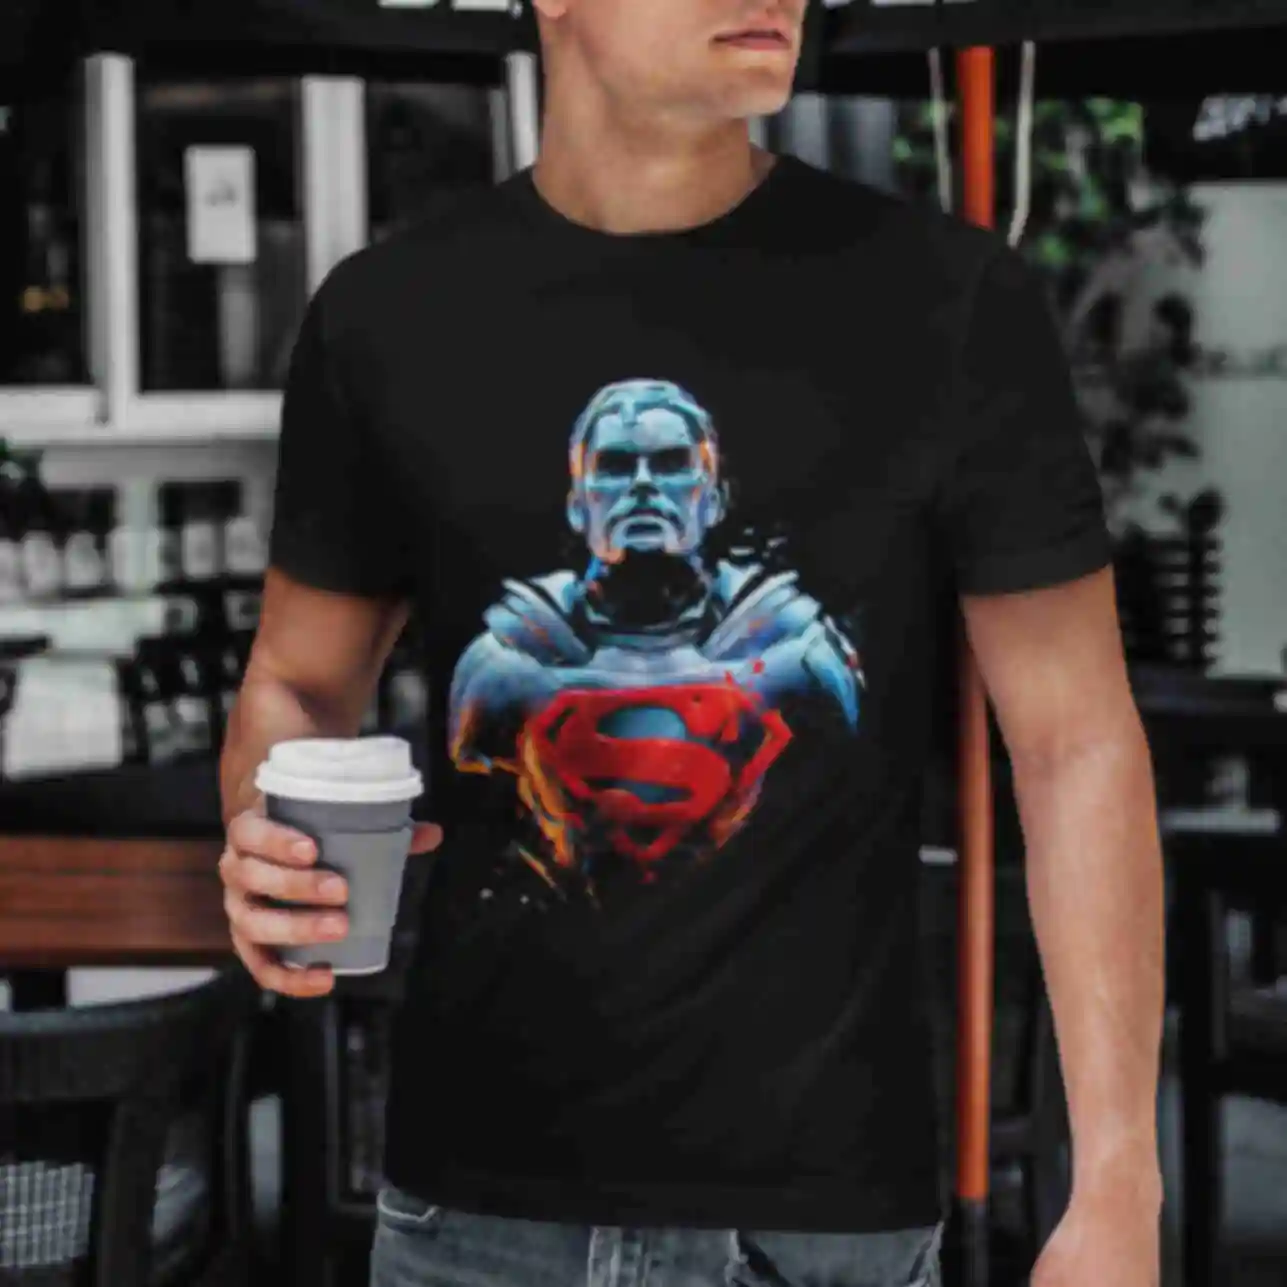 Футболка №17 • Людина зі сталі • Superman • Мерч • Одяг з супергероями в стилі DCФото №10